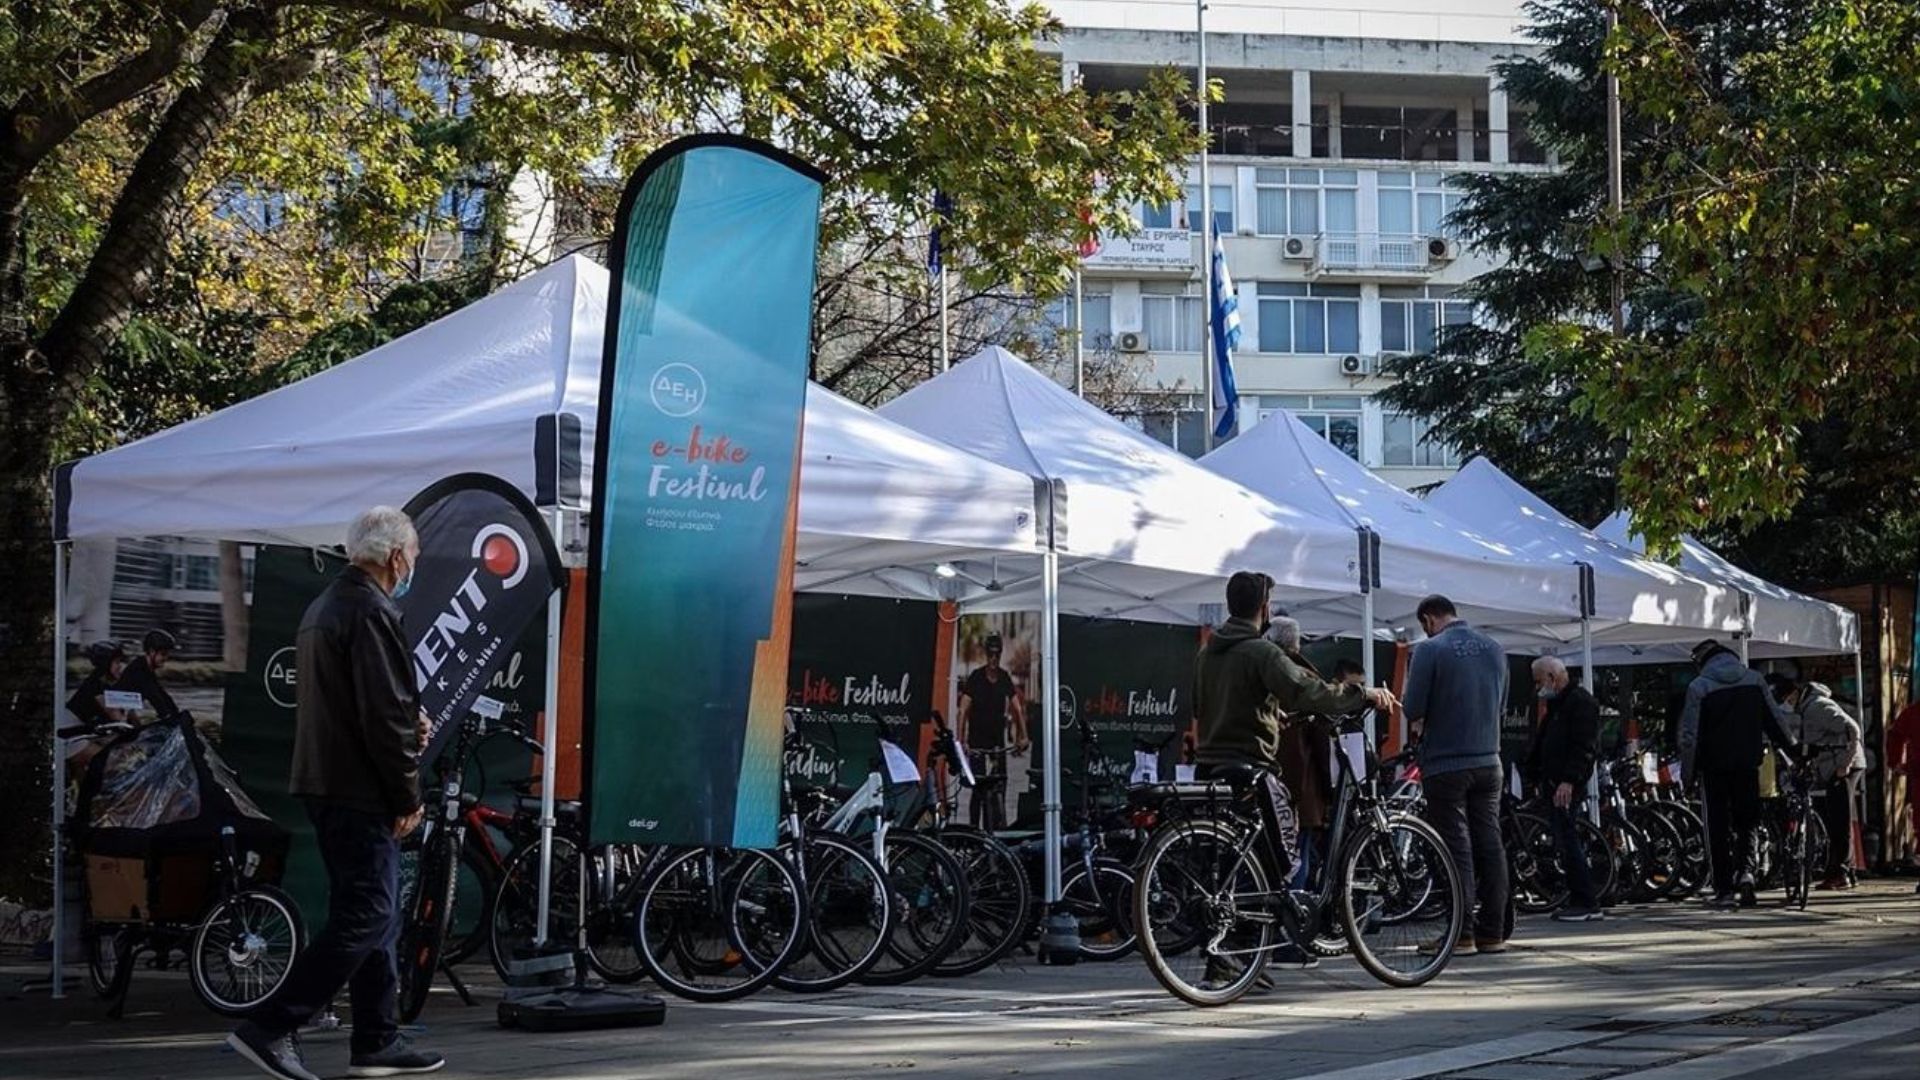 Το ΔΕΗ e-bike Festival επιστρέφει για 3η χρονιά